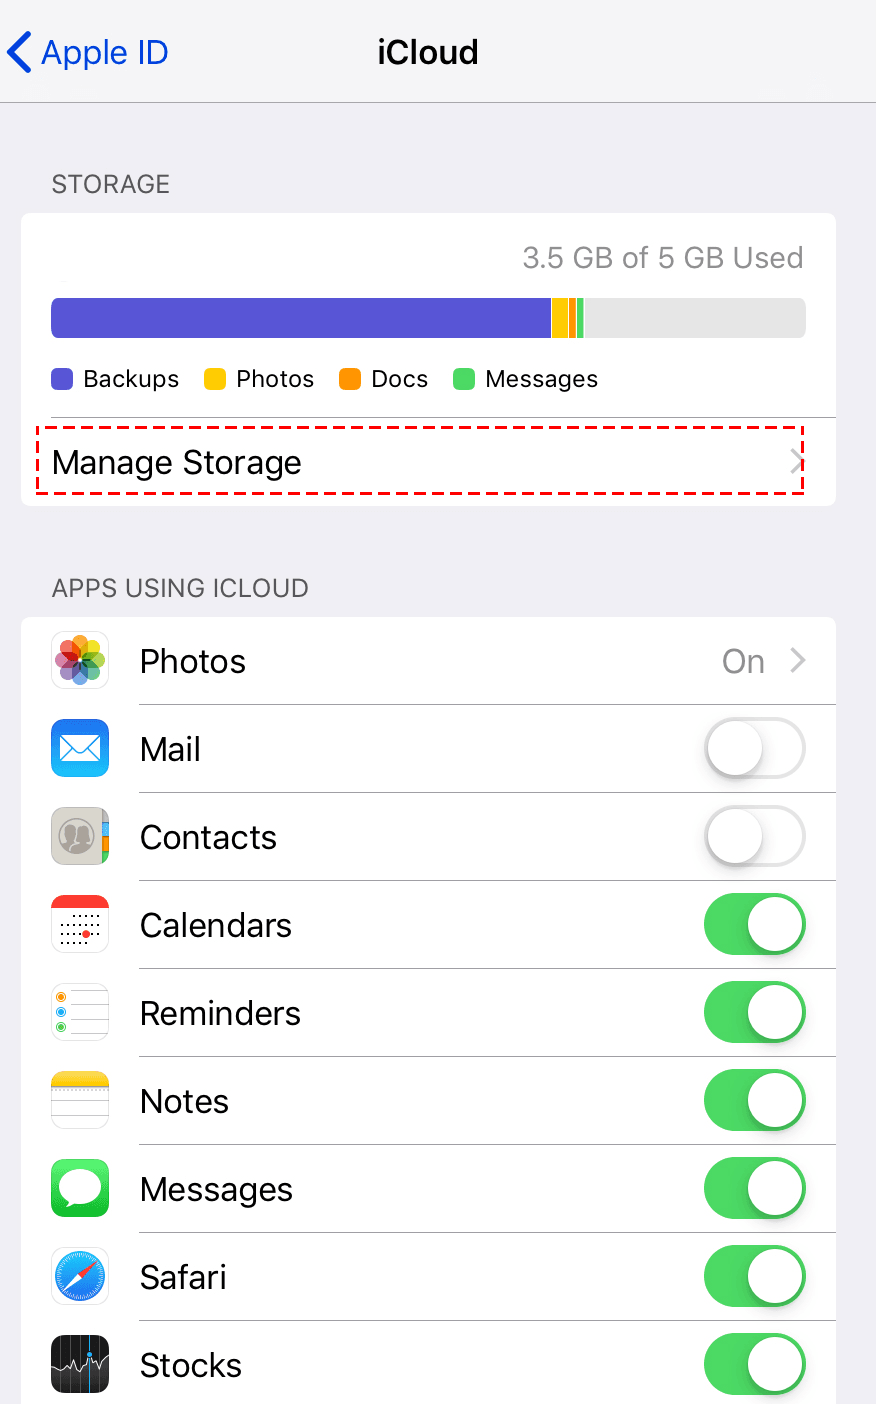 Free Up iCloud Storage